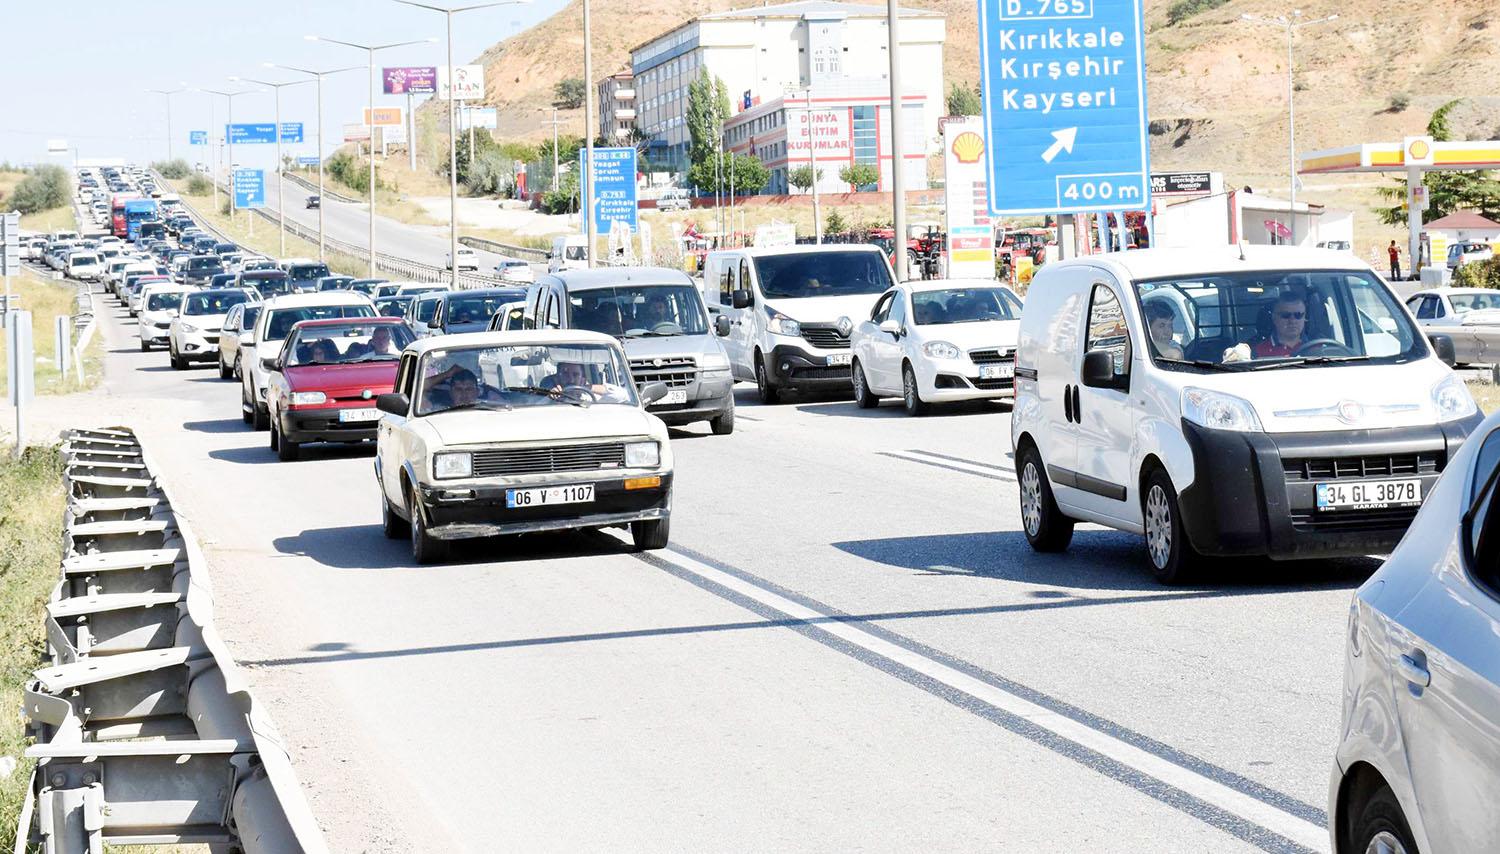 Kırıkkale’de 69 bin 741 motorlu taşıt bulunuyor - Kırıkkale Haber, Son Dakika Kırıkkale Haberleri